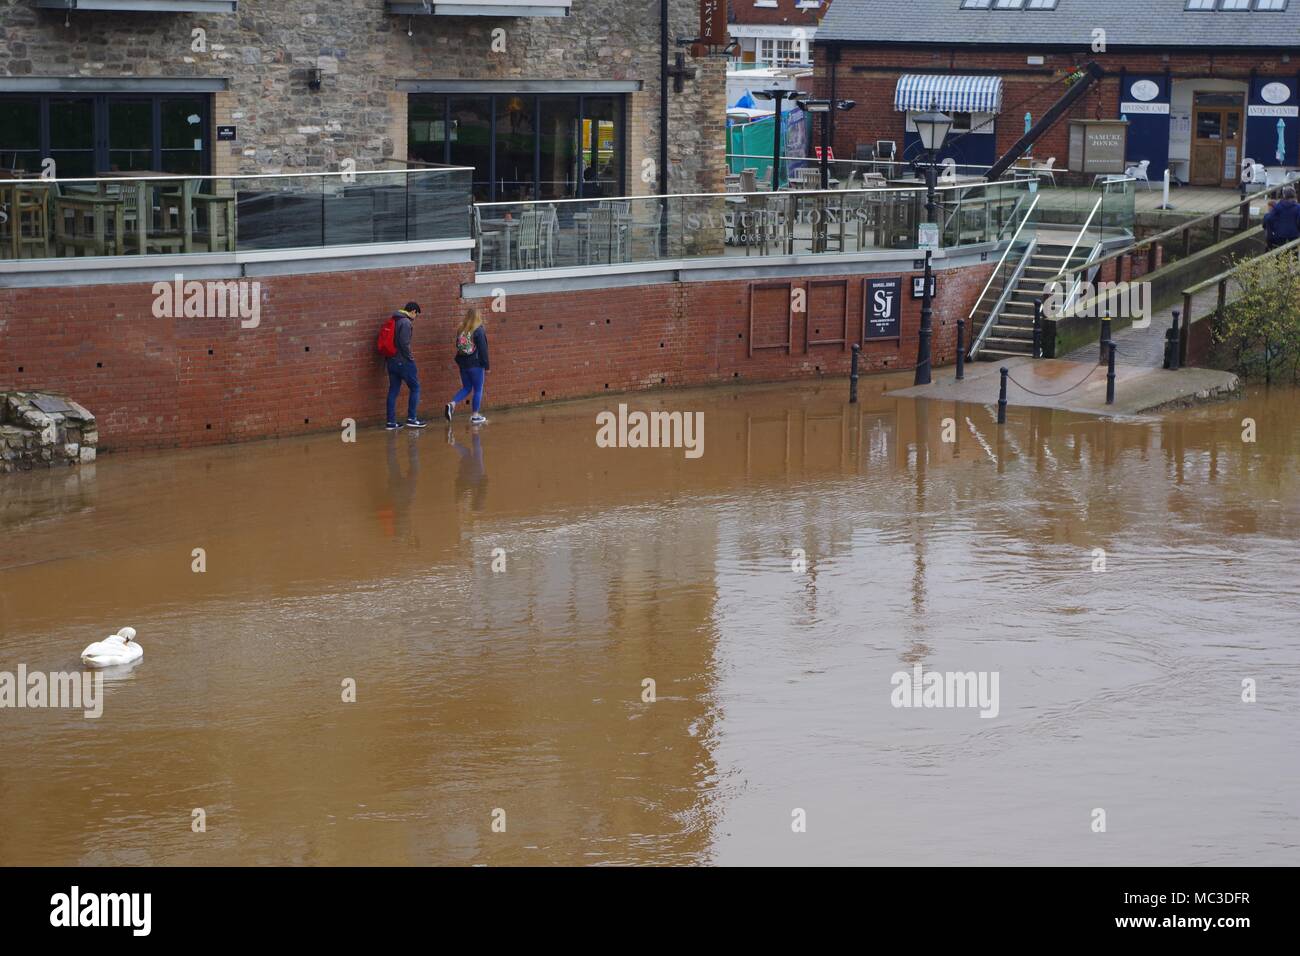 Pedoni negoziare una pavimentazione allagata a Exeter Quay, Devon, Regno Unito. Fiume Exe Flood, aprile 2018. Foto Stock